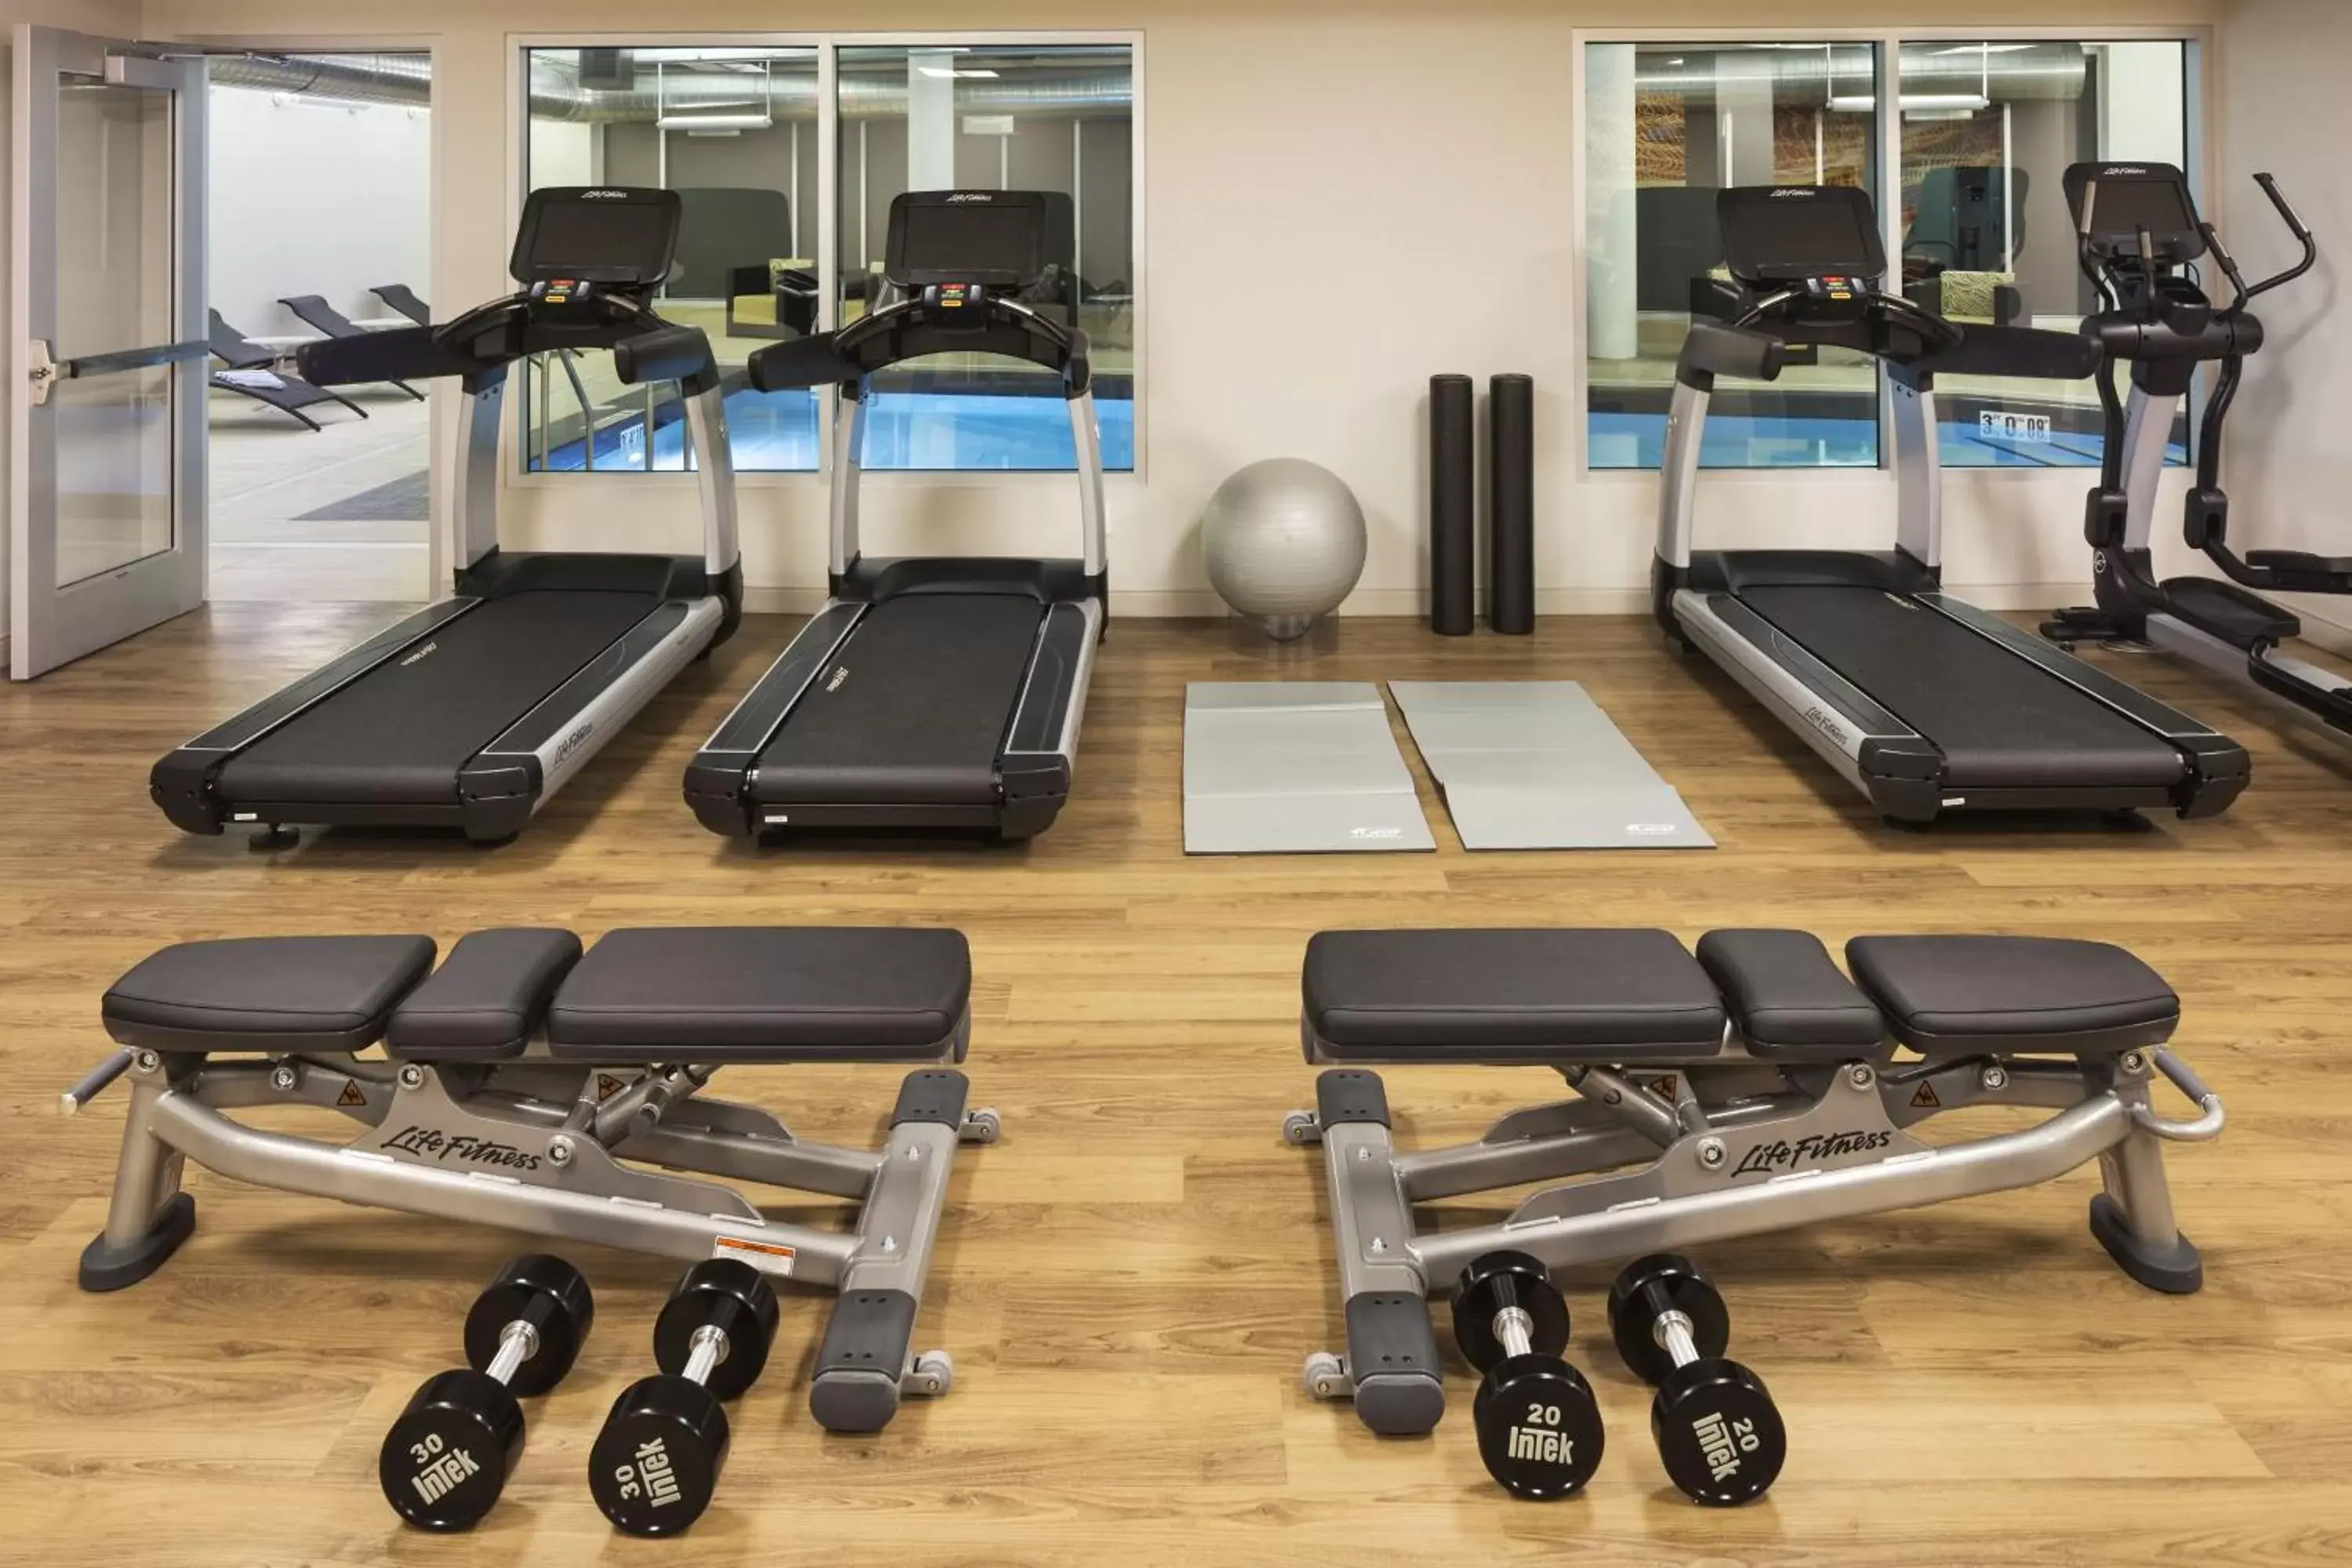 Fitness centre/facilities, Fitness Center/Facilities in Hyatt Regency Bloomington - Minneapolis